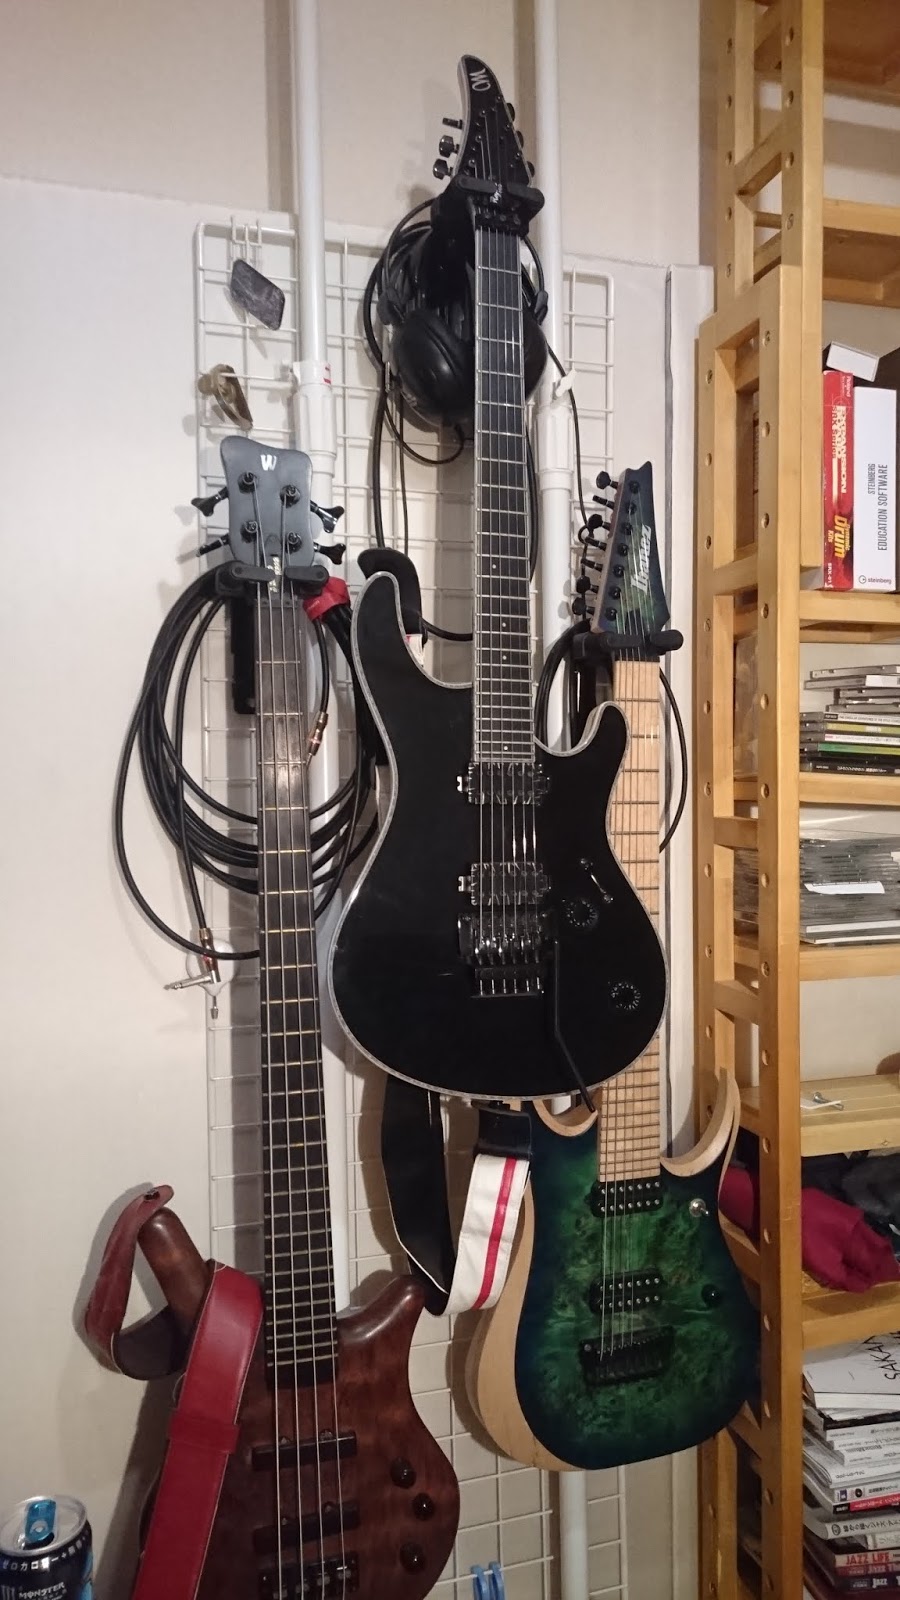 壁掛けギターハンガーを自作する方法 地震に強い壁掛けギタースタンドの作り方